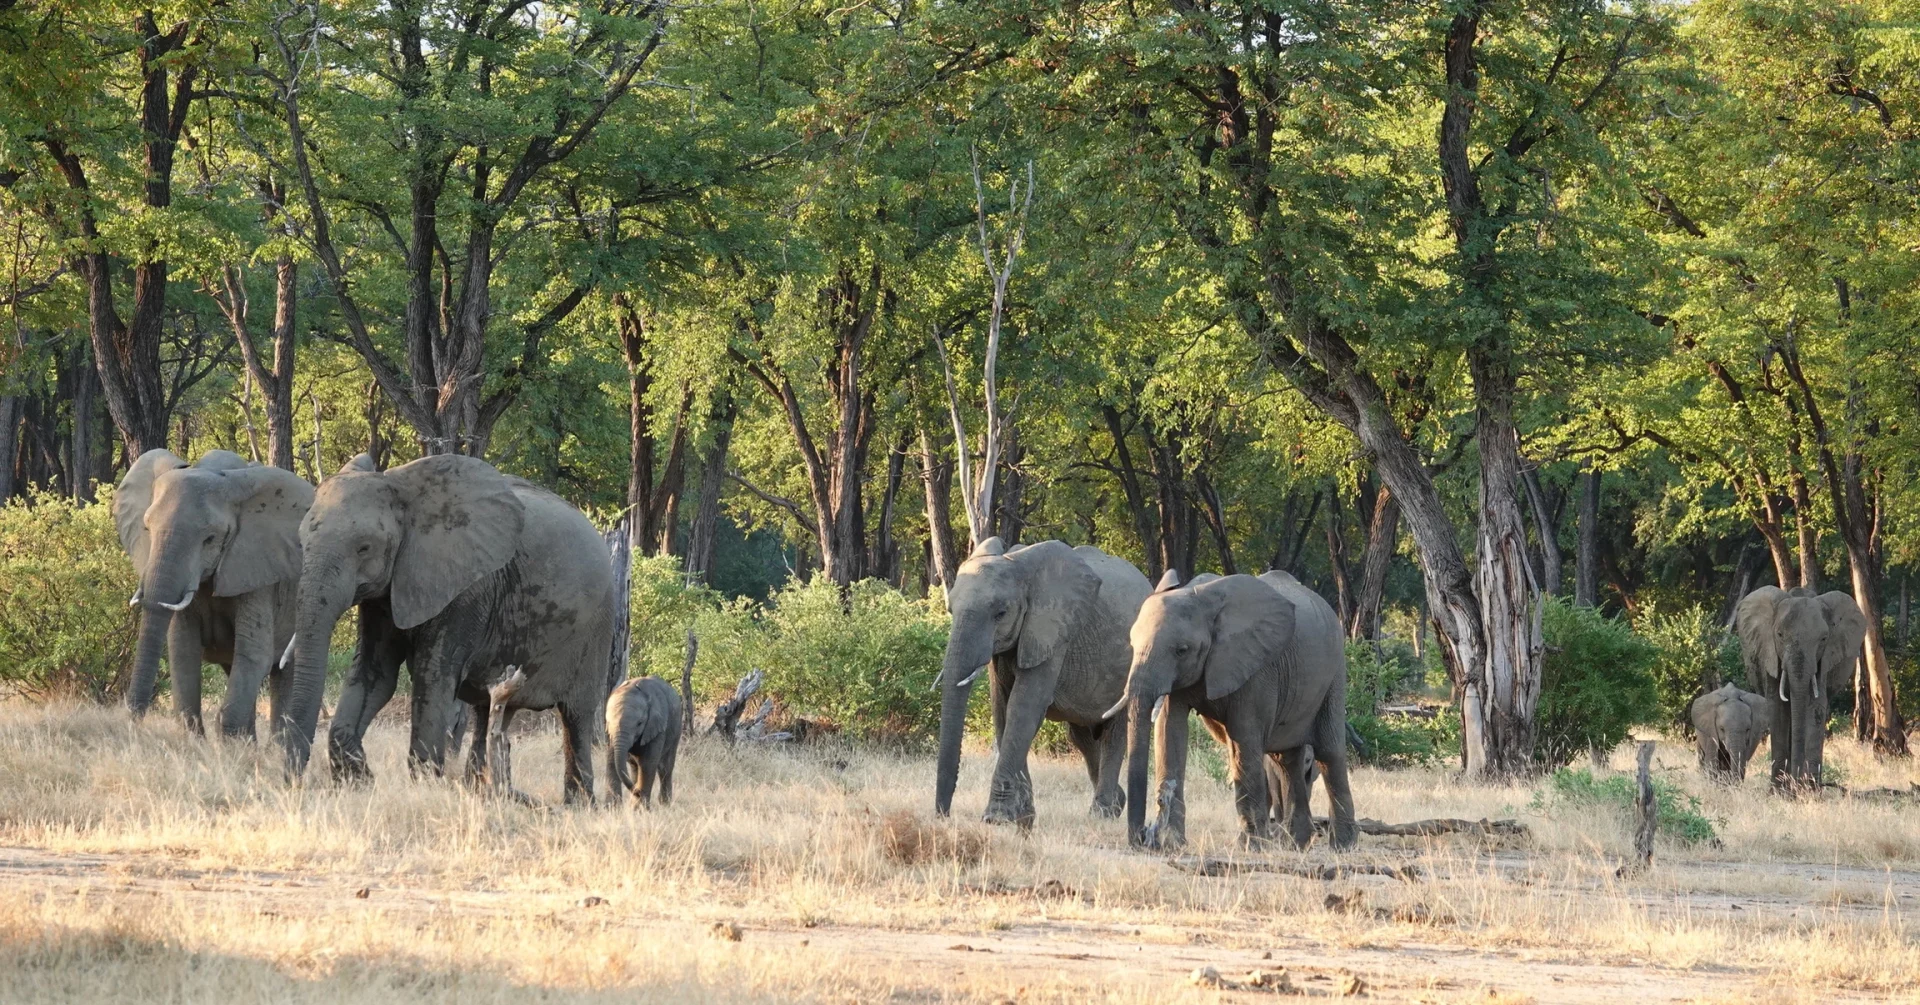 Elephants_zimababwe_leonie_photos